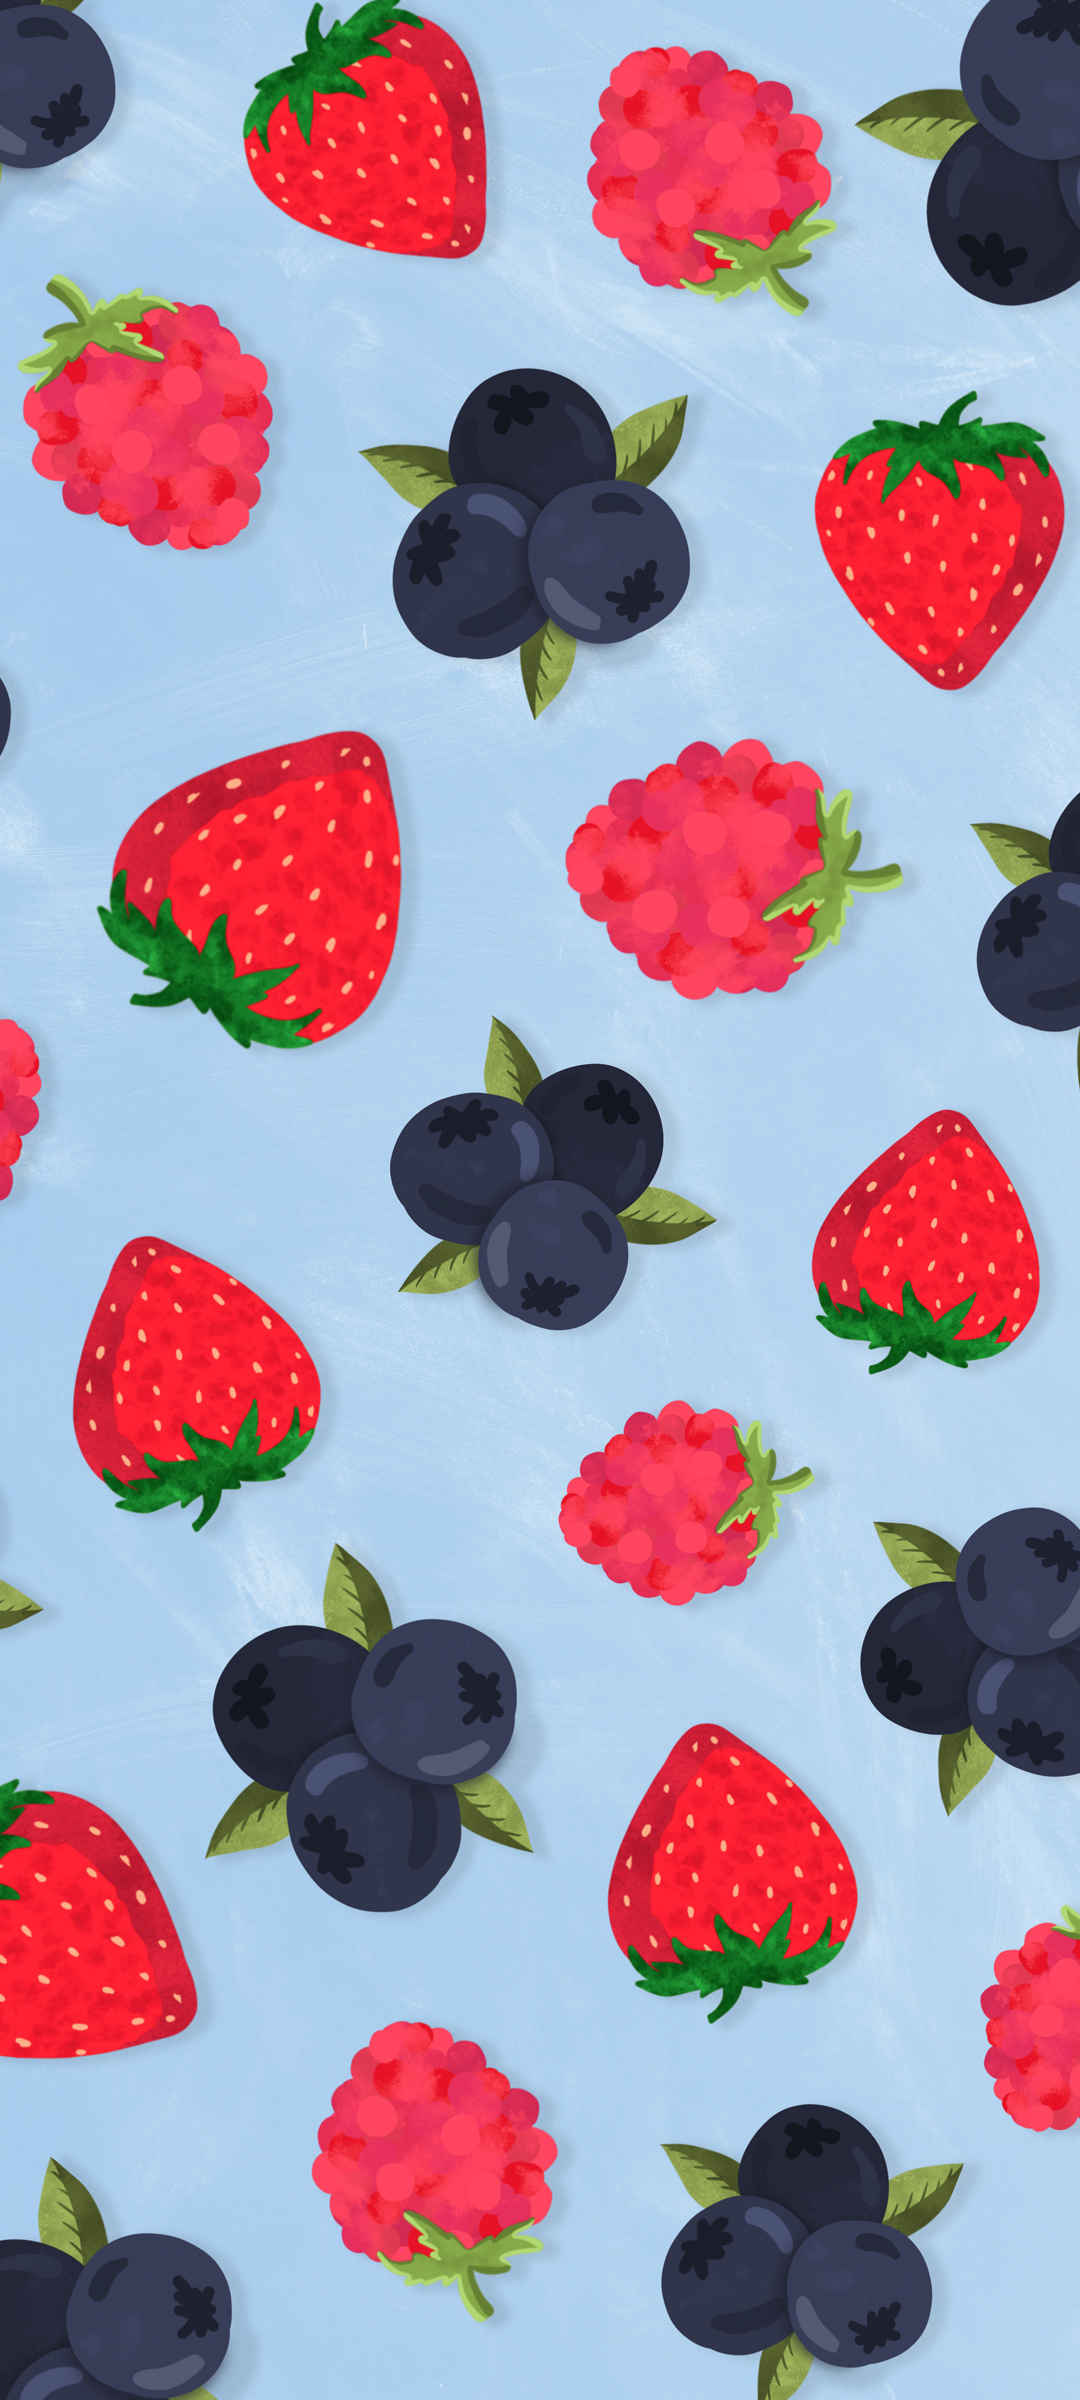 女生专用草莓水果背景可爱手机壁纸